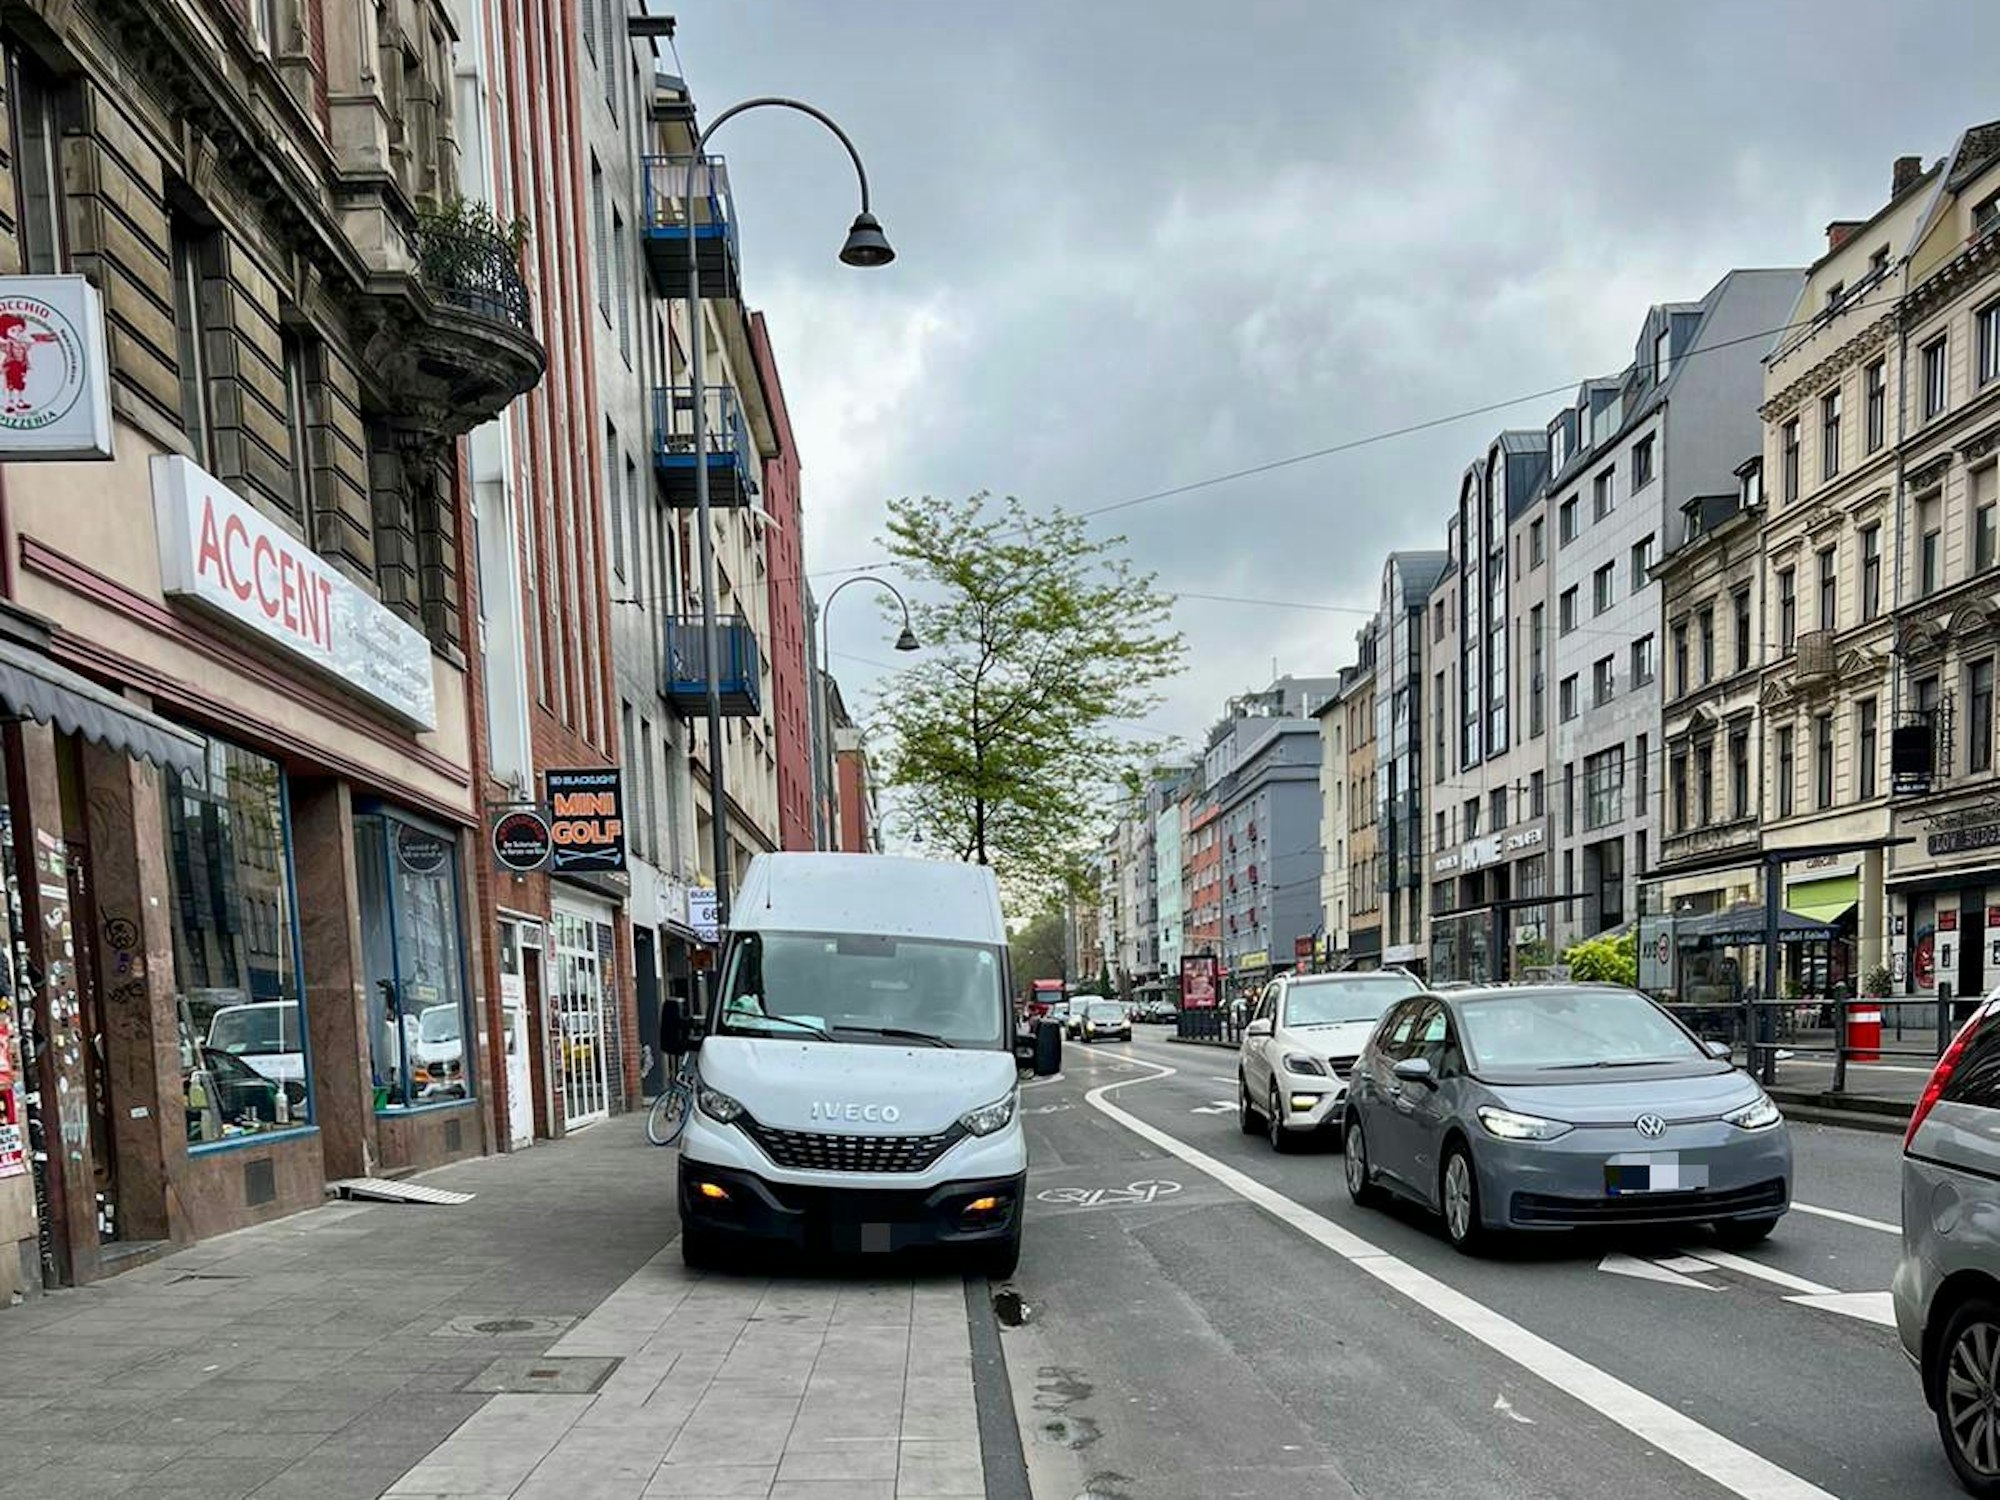 Ein Lieferwagen steht vor dem Geschäft Accent auf dem Gehweg der Aachener Straße.